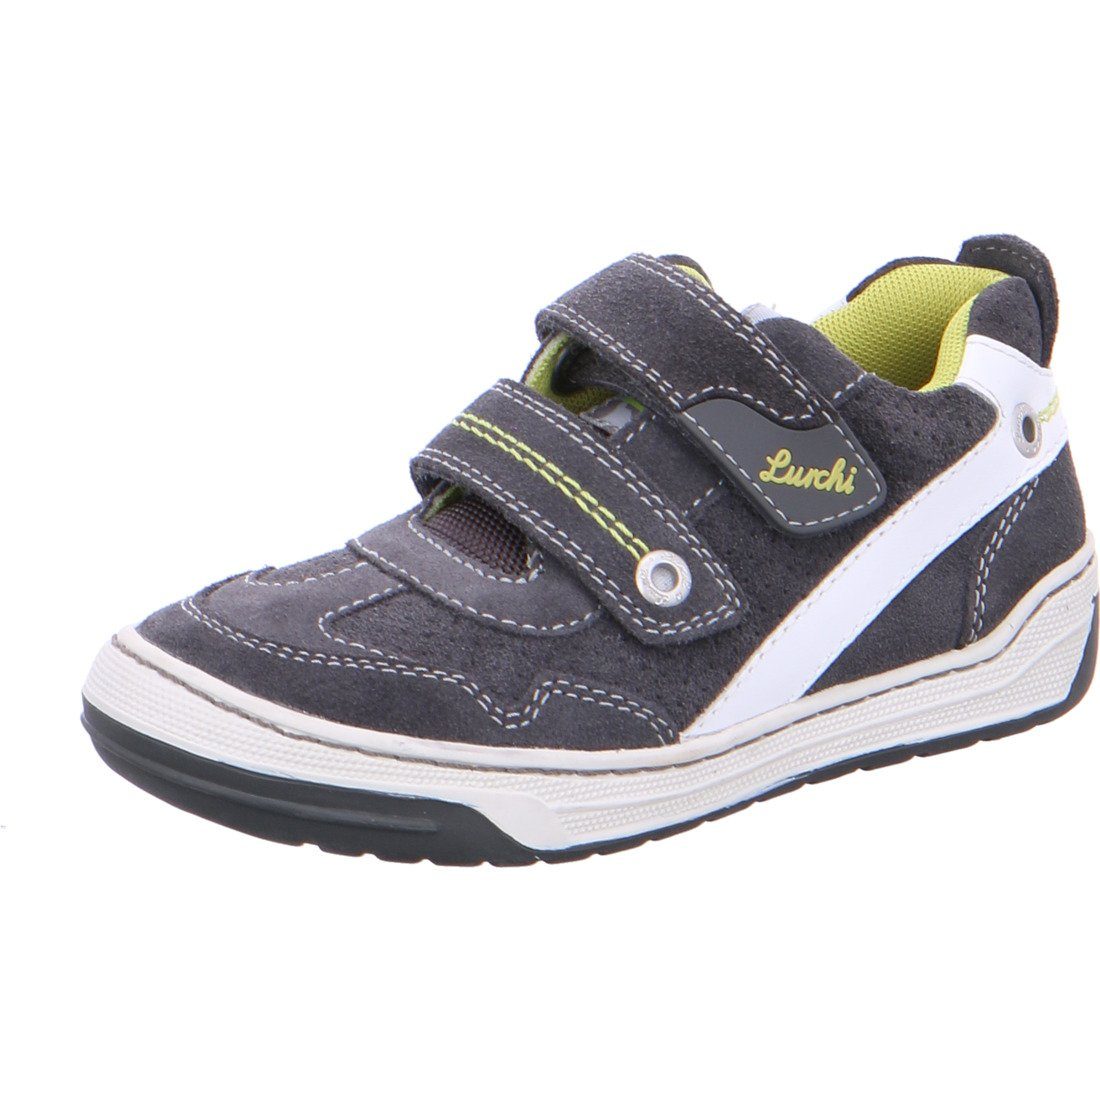 Lurchi Lurchi Schuhe, Sneaker Bruce - Rauleder Jungen Sneaker grau 036954 | Schnürschuhe